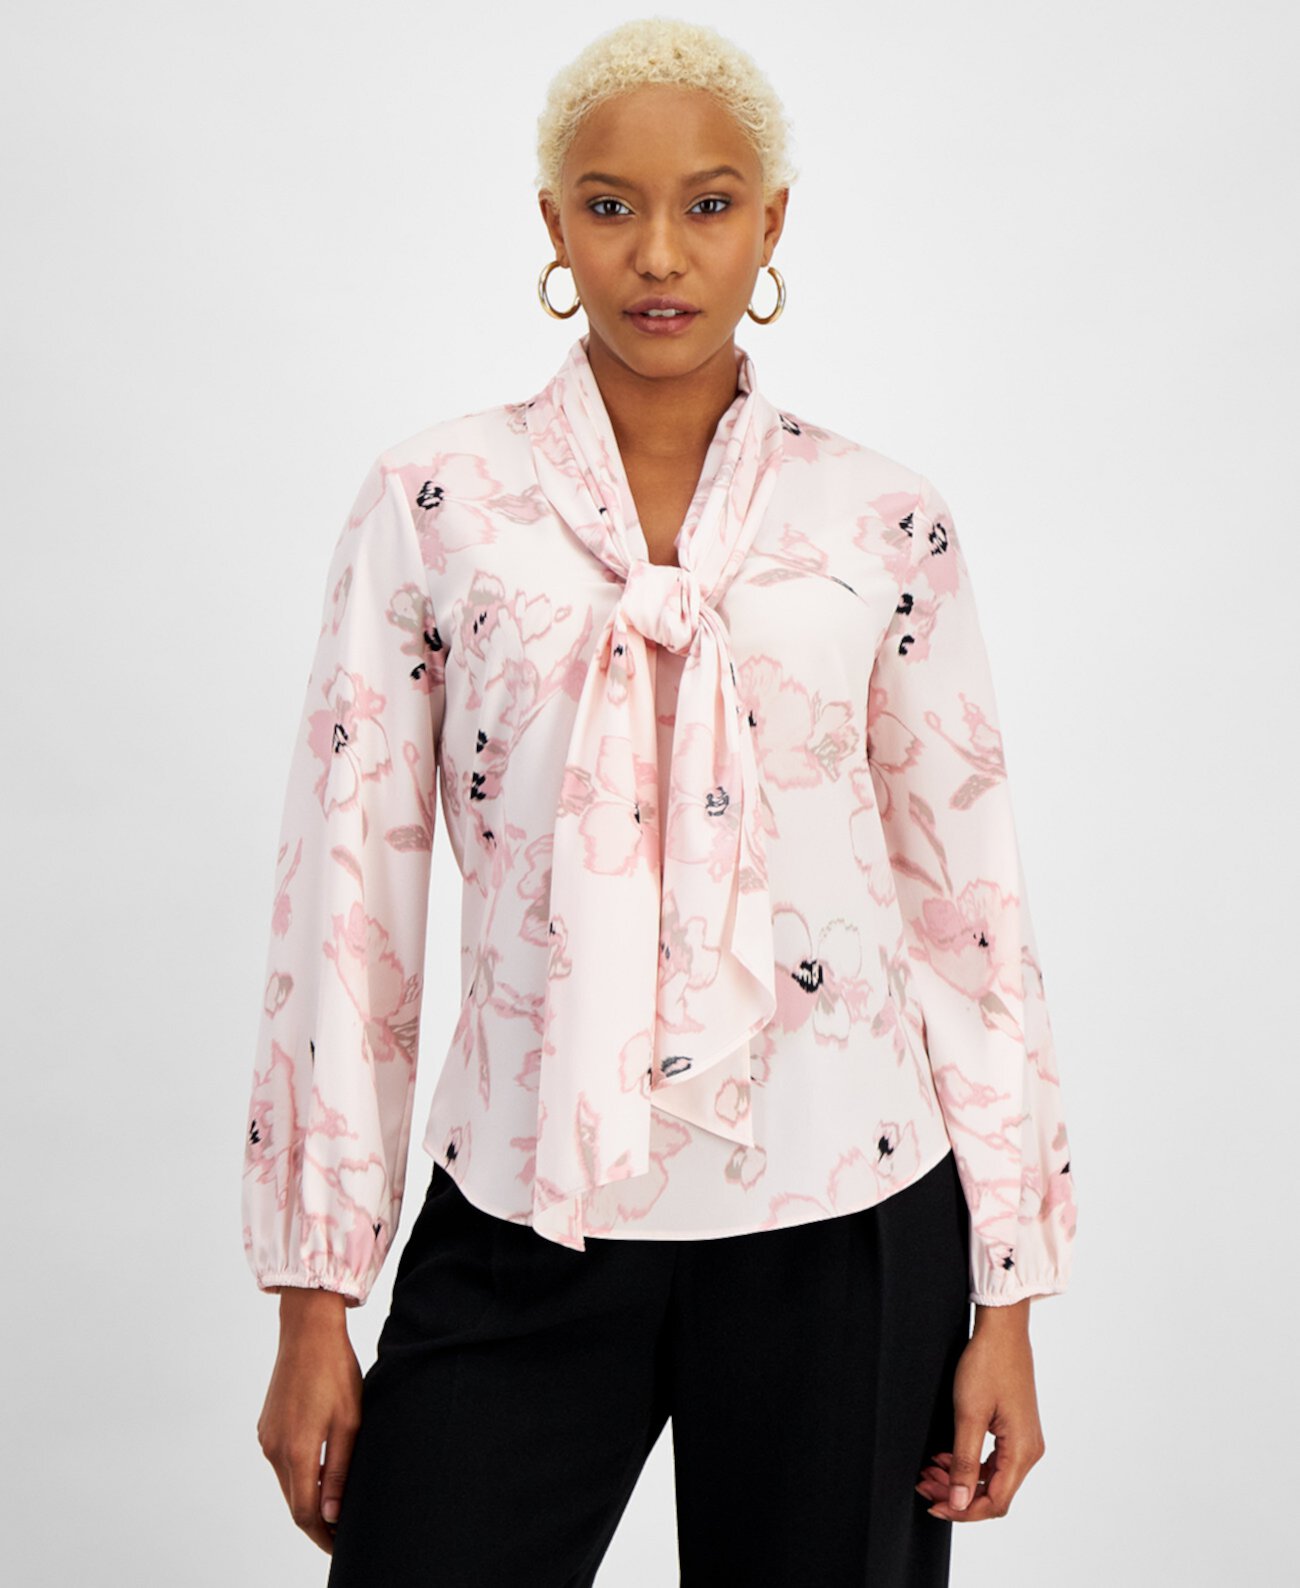 Женская блузка с бантом с цветочным принтом, созданная для Macy's Bar III